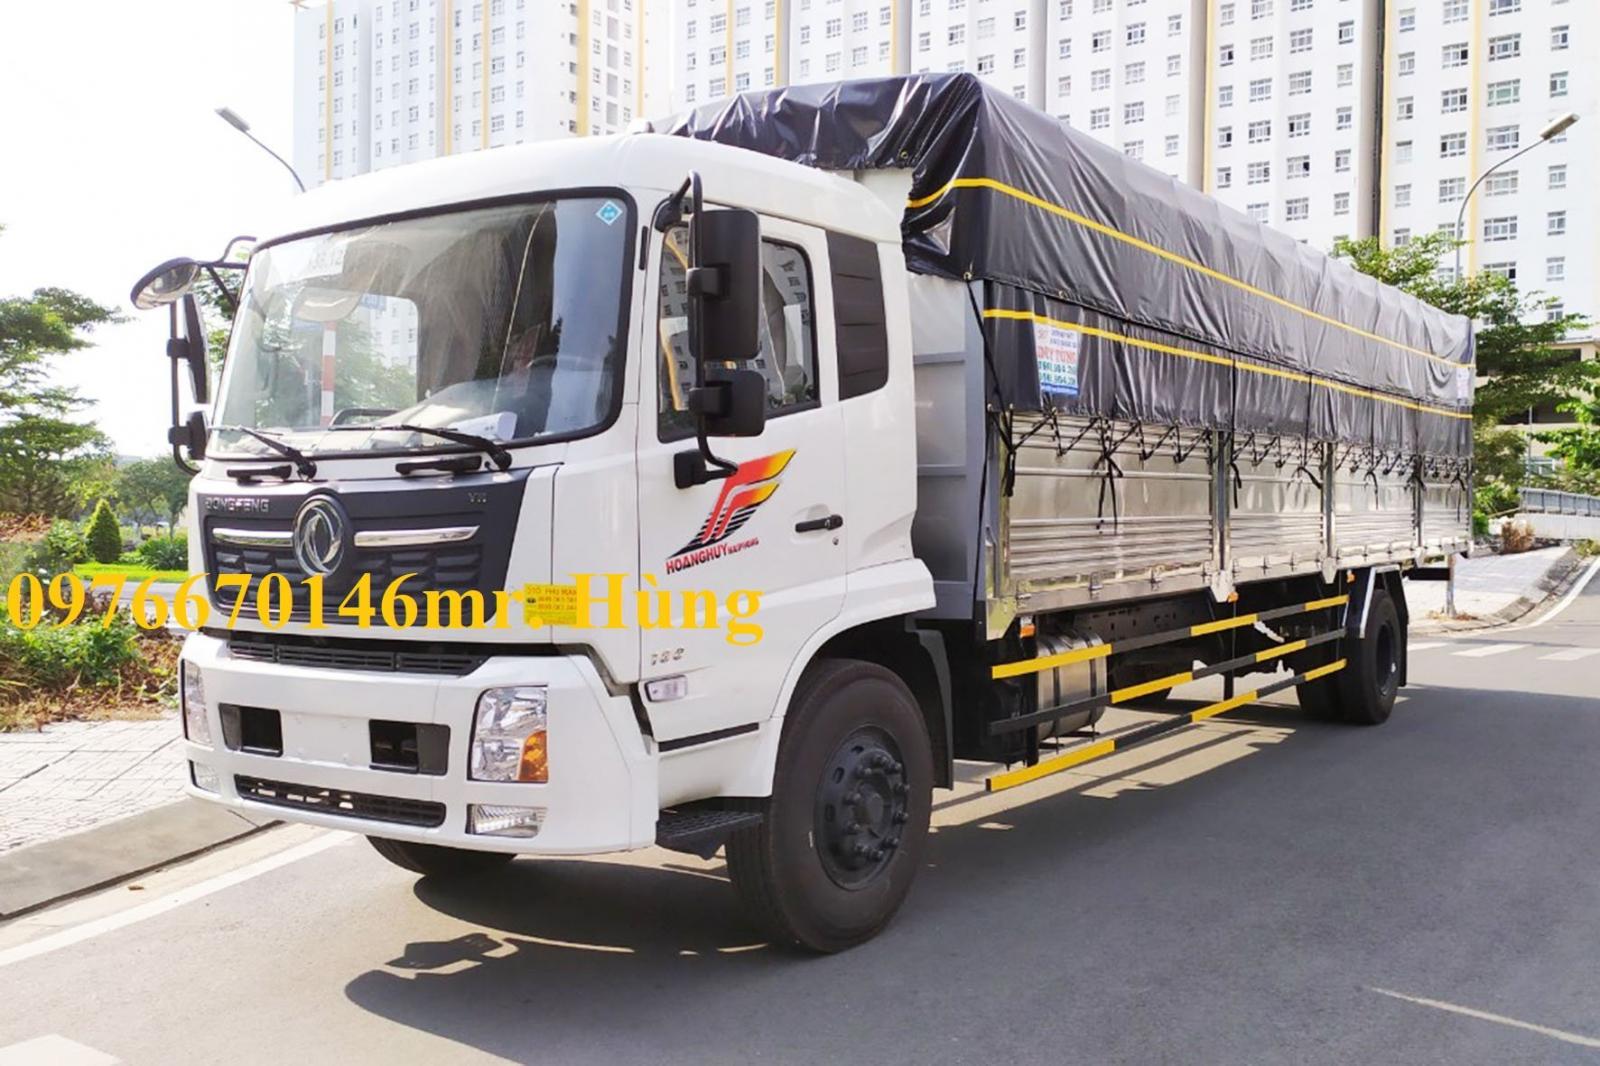 Cần bán xe tải Dongfeng 8t thùng kín dài 9m5